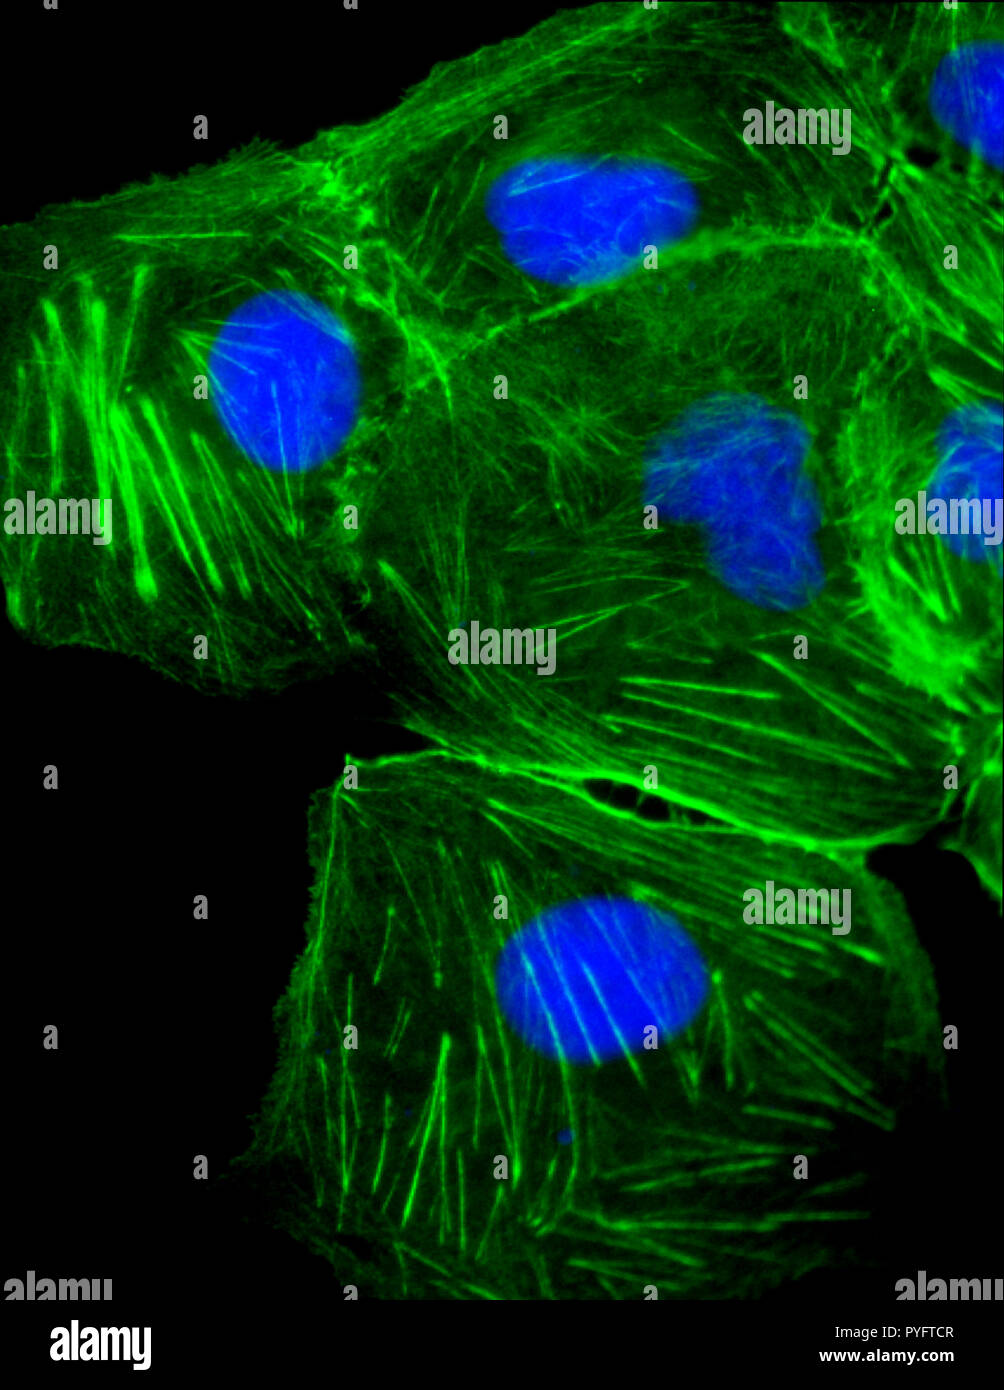 Células fluorescentes bajo microscopio confocal ADN teñidas de azul y actina, los microtúbulos en verde Foto de stock